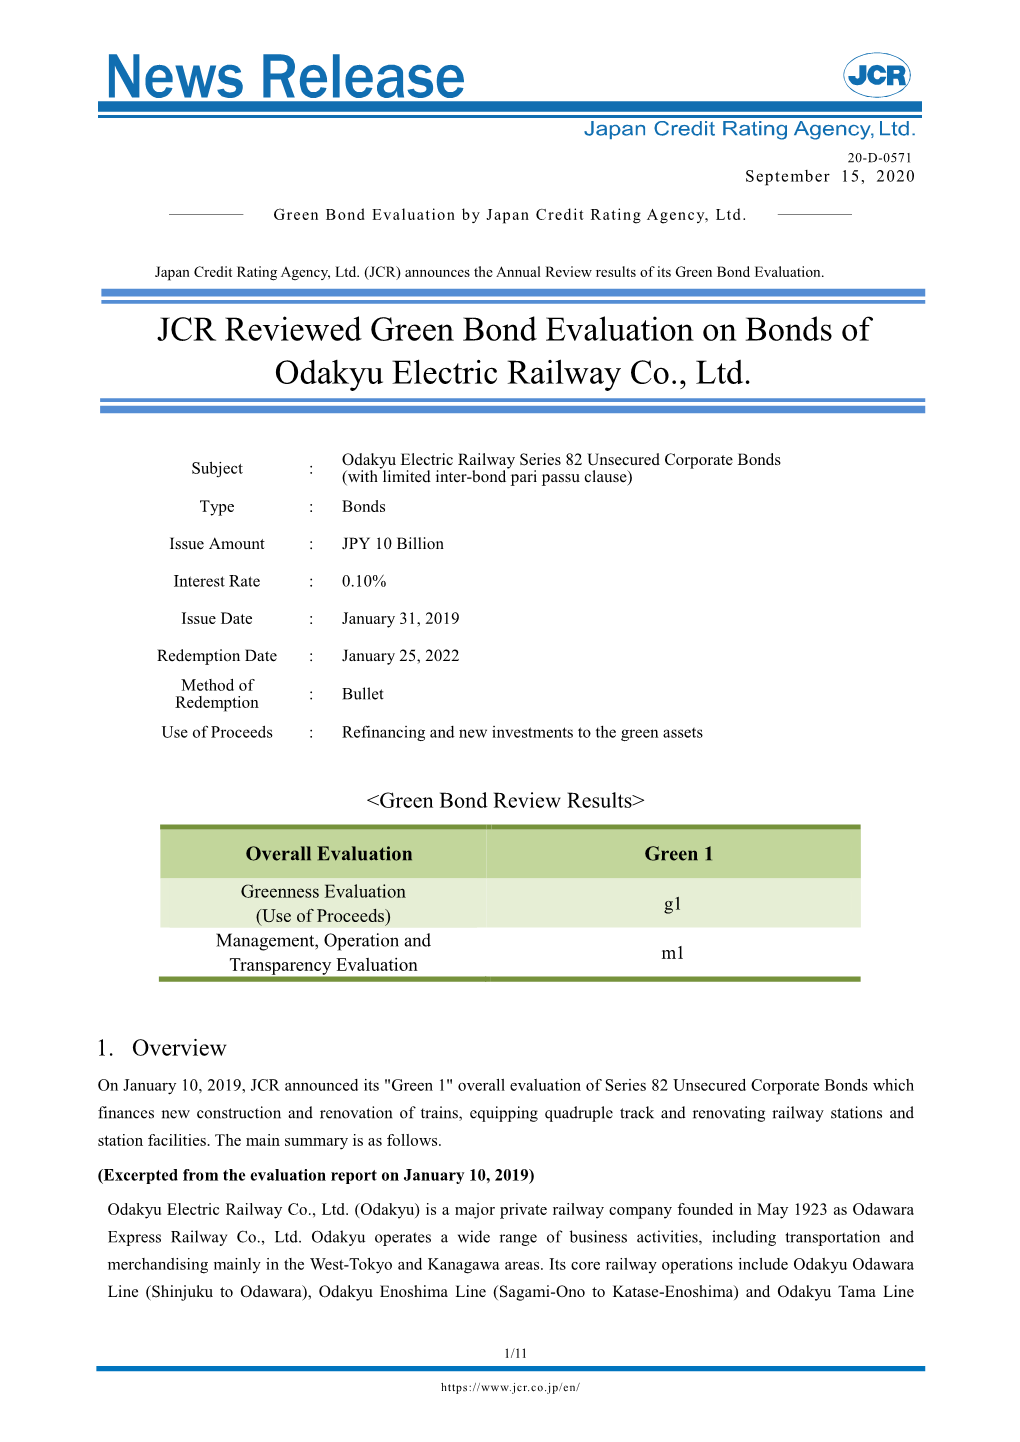 JCR Reviewed the Bonds of Odakyu Electric Railway